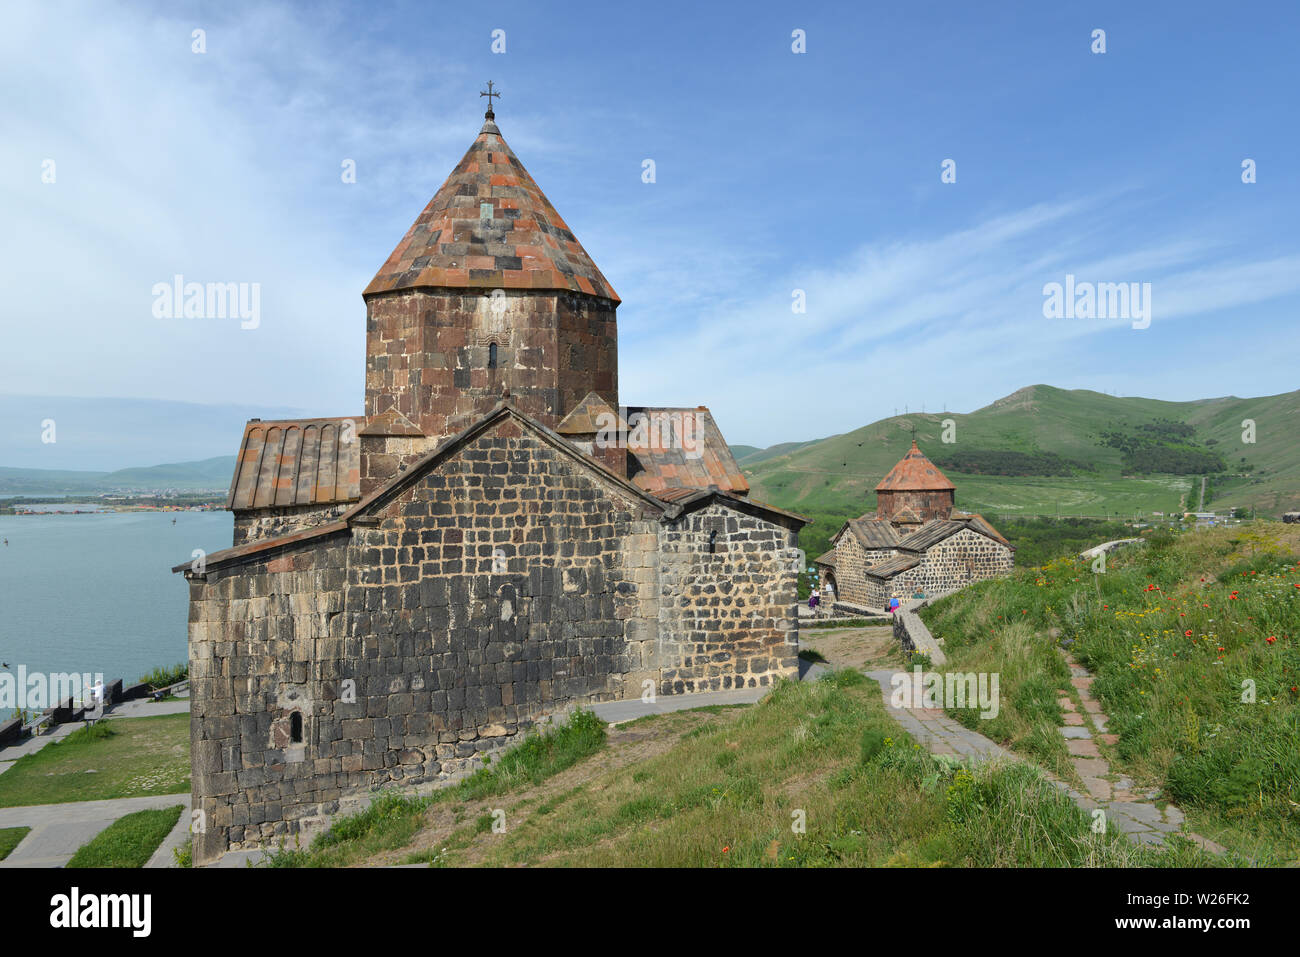 Armenia Tourist tourism travel highlights Stock Photo